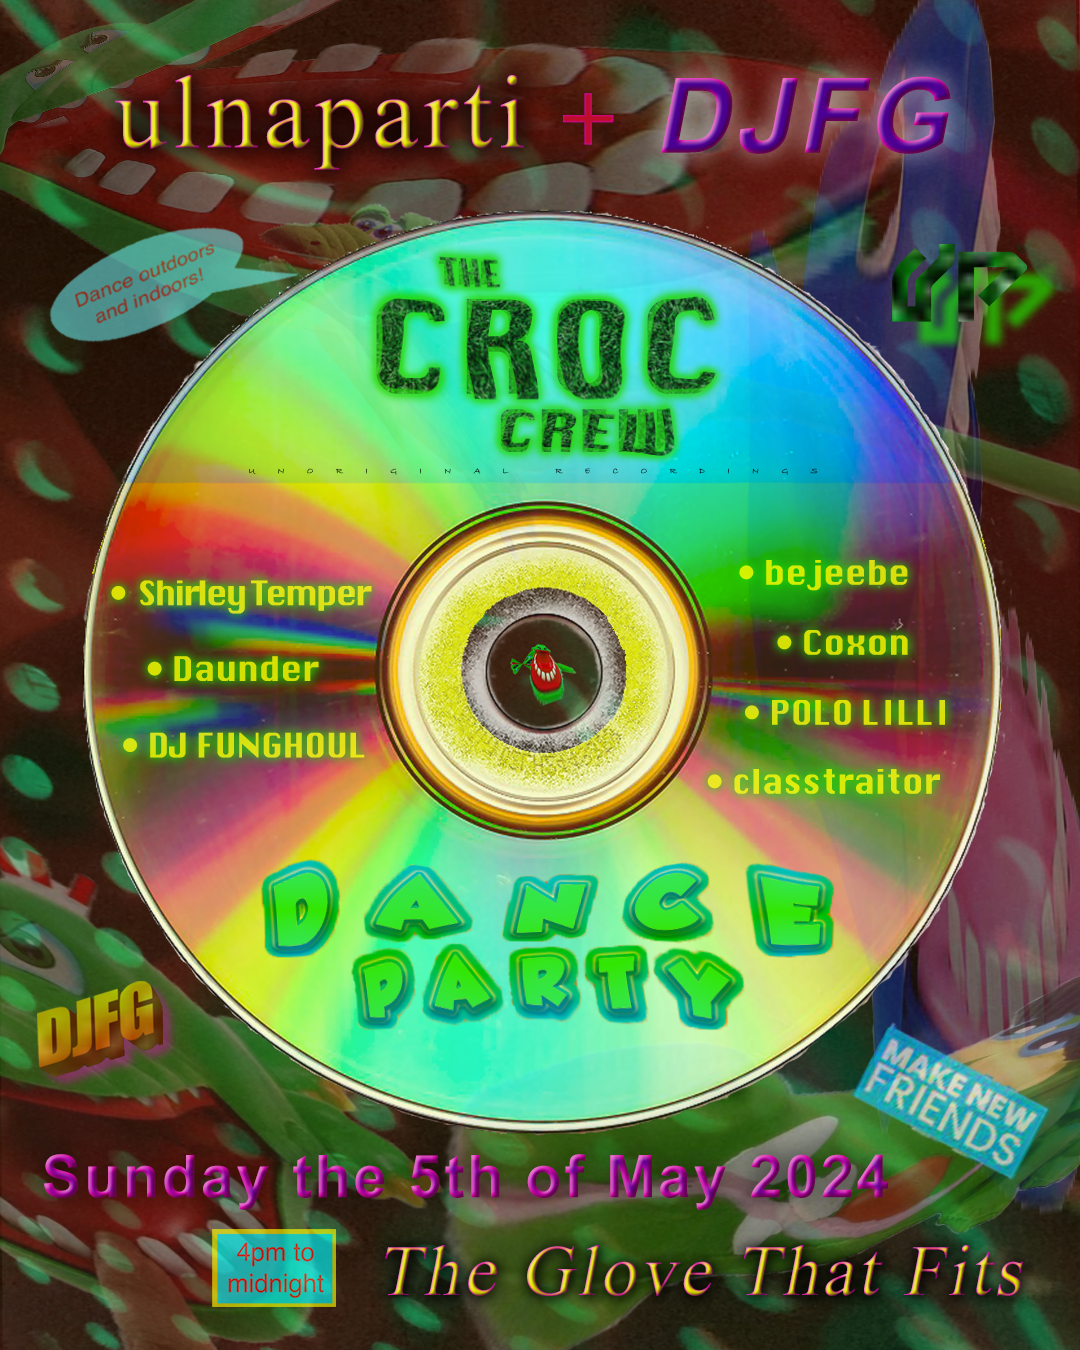 ulnaparti & DJFG: The Croc Crew Dance Party with Coxon, POLO LILLI & Shirley Temper - Página frontal